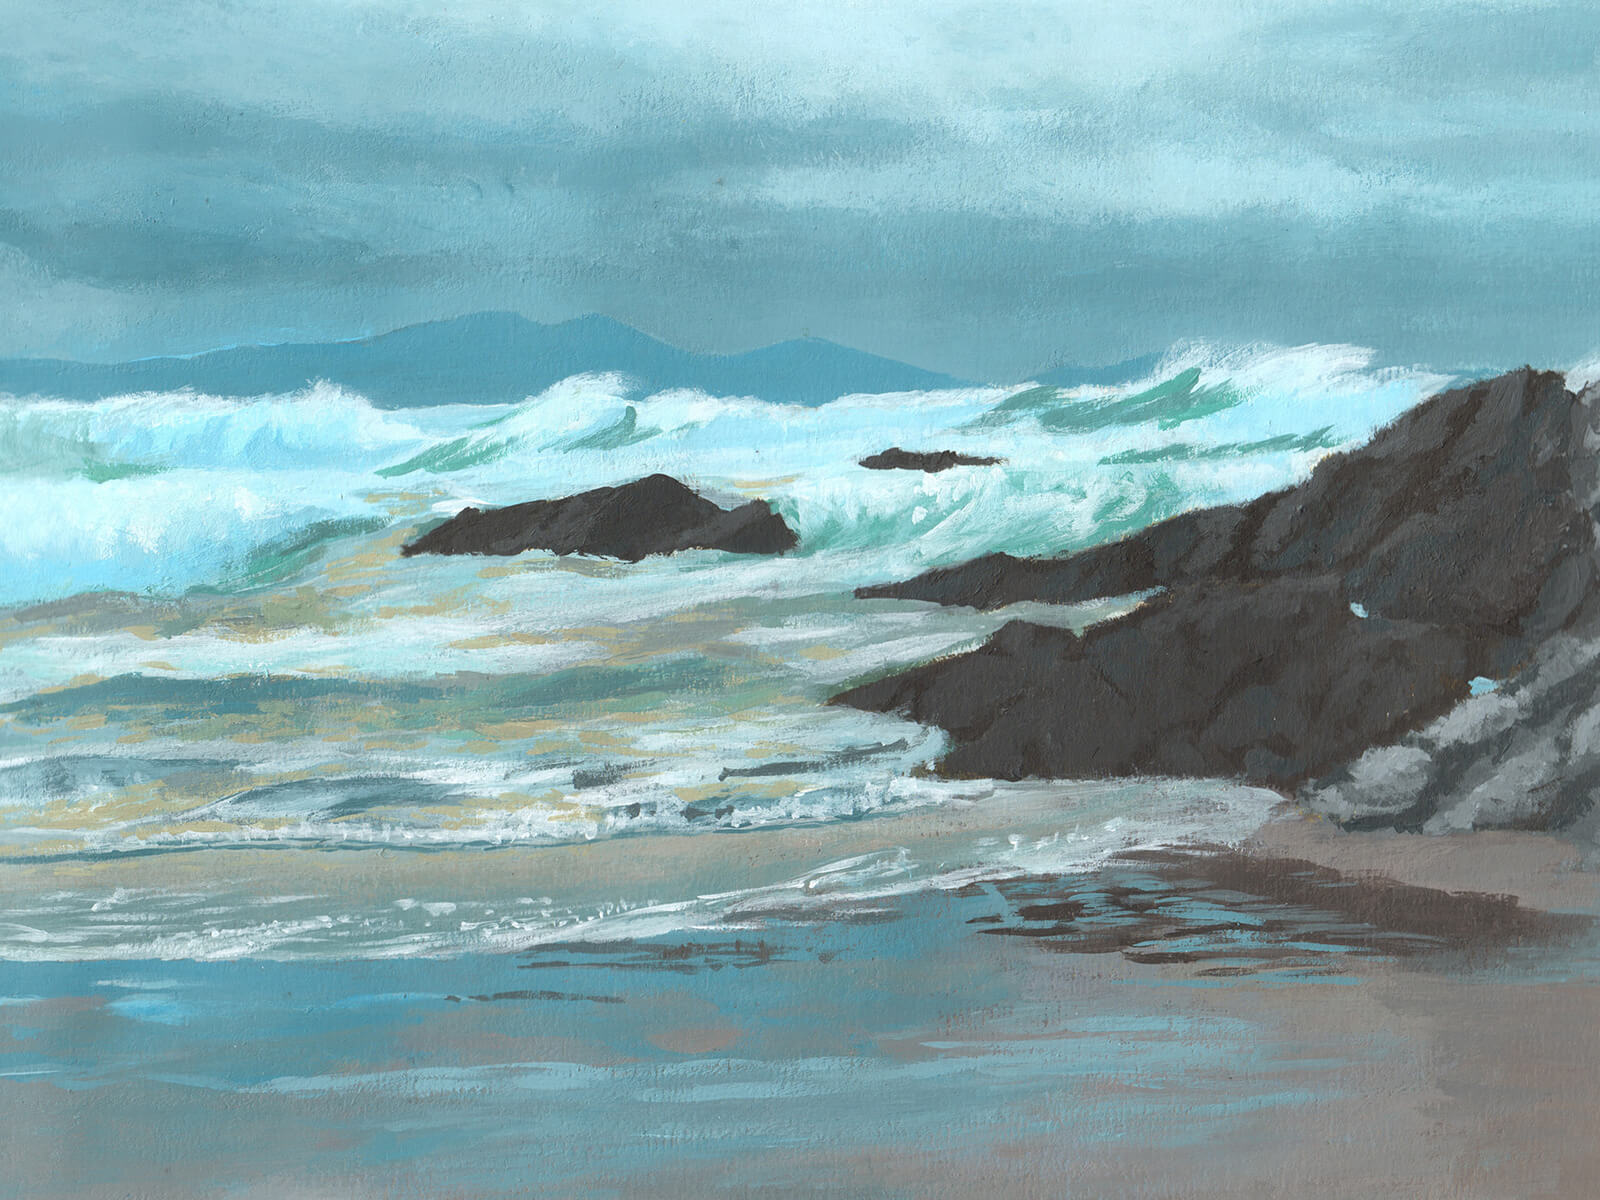 Paisaje de una orilla del océano con olas blancas entrecortadas rompiendo contra rocas de color gris oscuro sobre un cielo nublado oscuro.